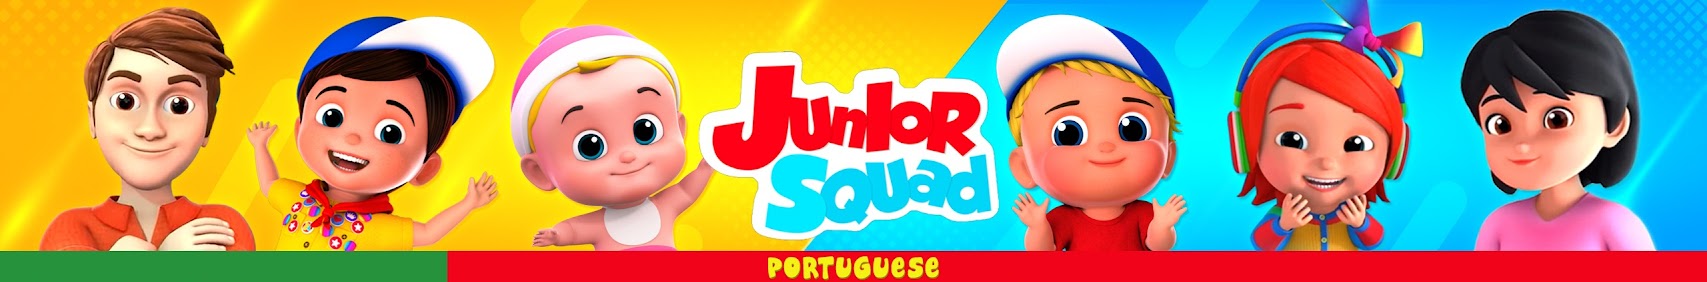 Junior Squad Português - animação canção infantil